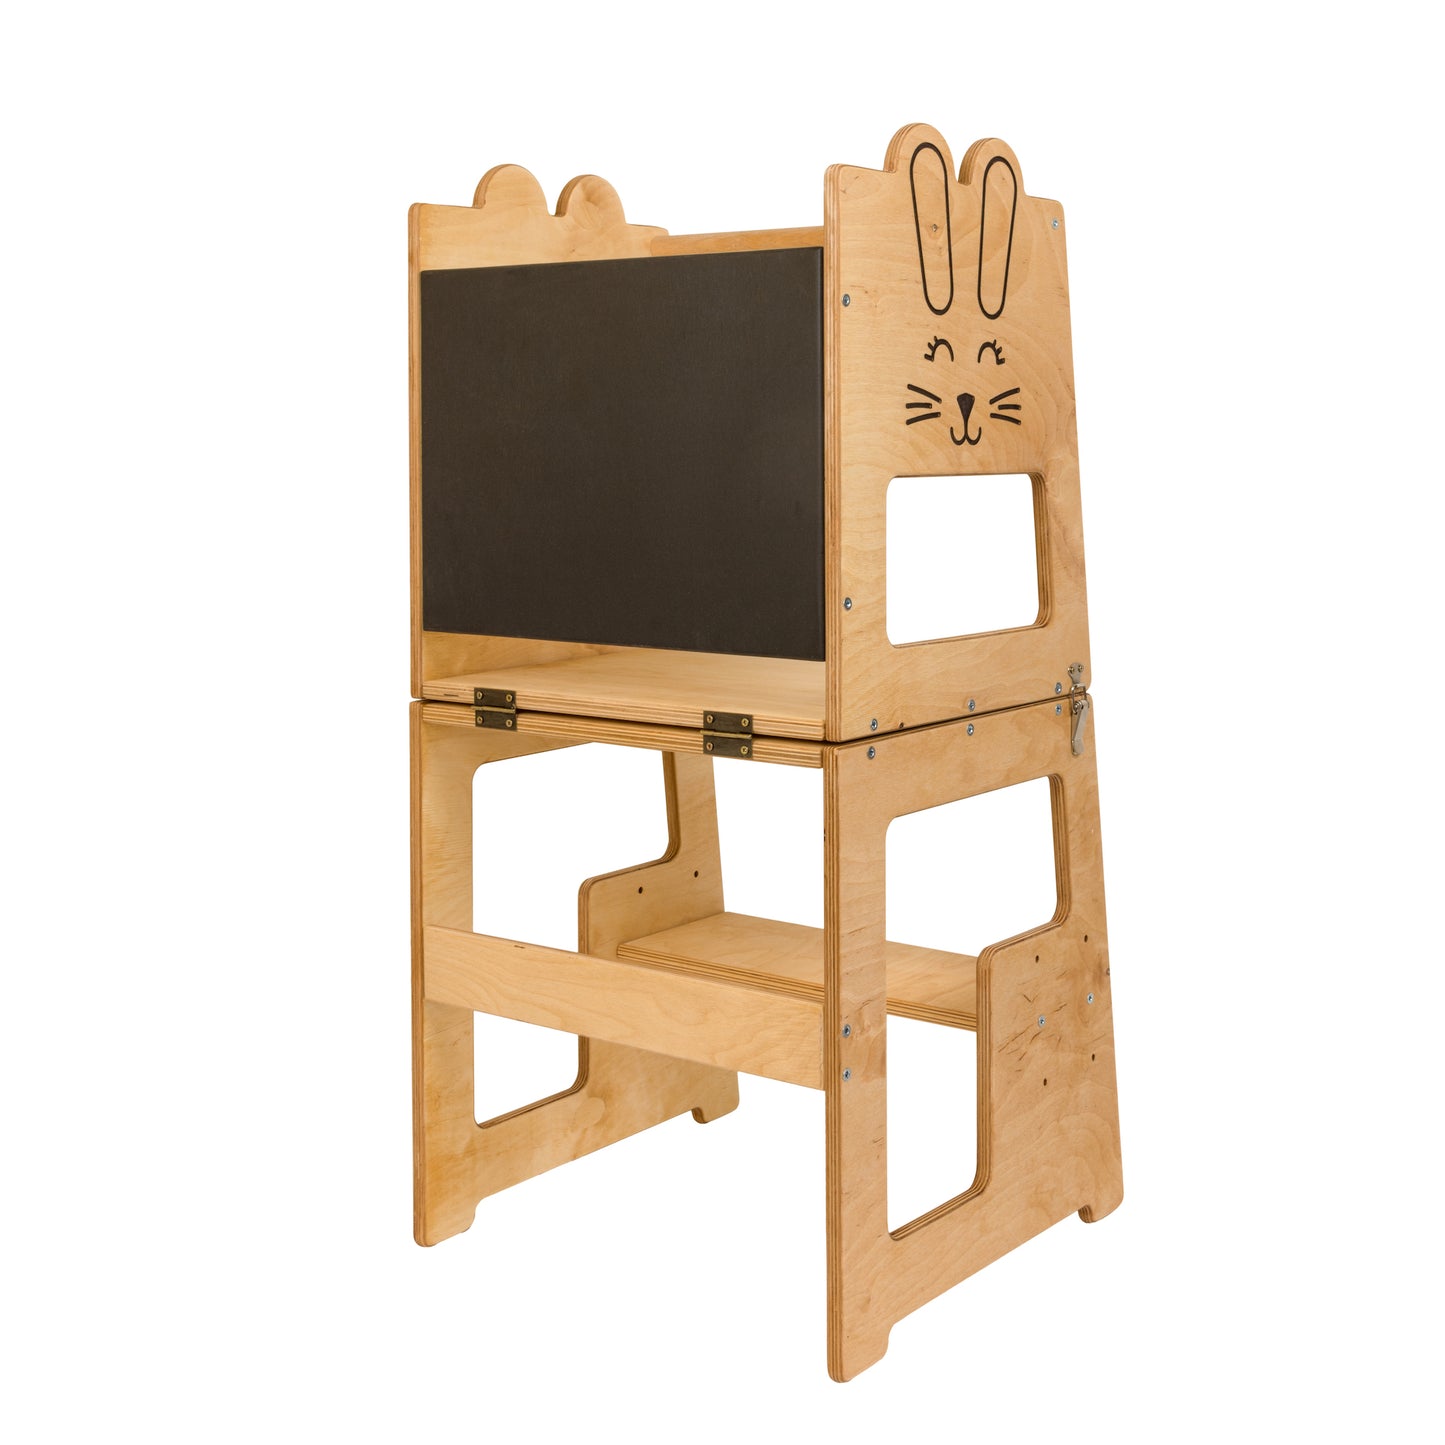 Učebnú vežu 2v1 Montessori je možné prerobiť na stôl a stoličku - Bunny